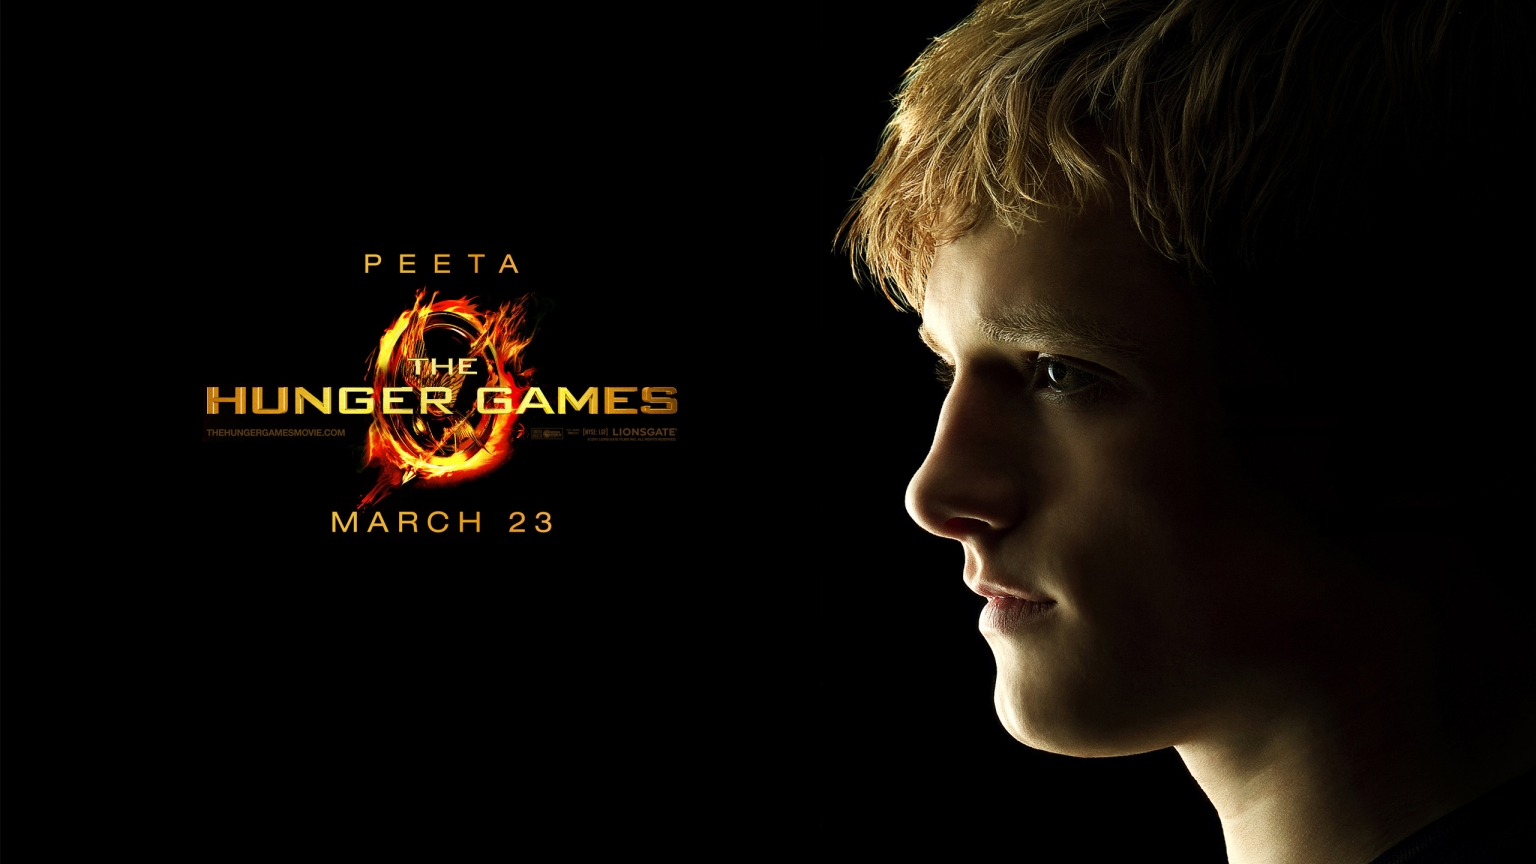 The Hunger Games Peeta for 1536 x 864 HDTV resolution